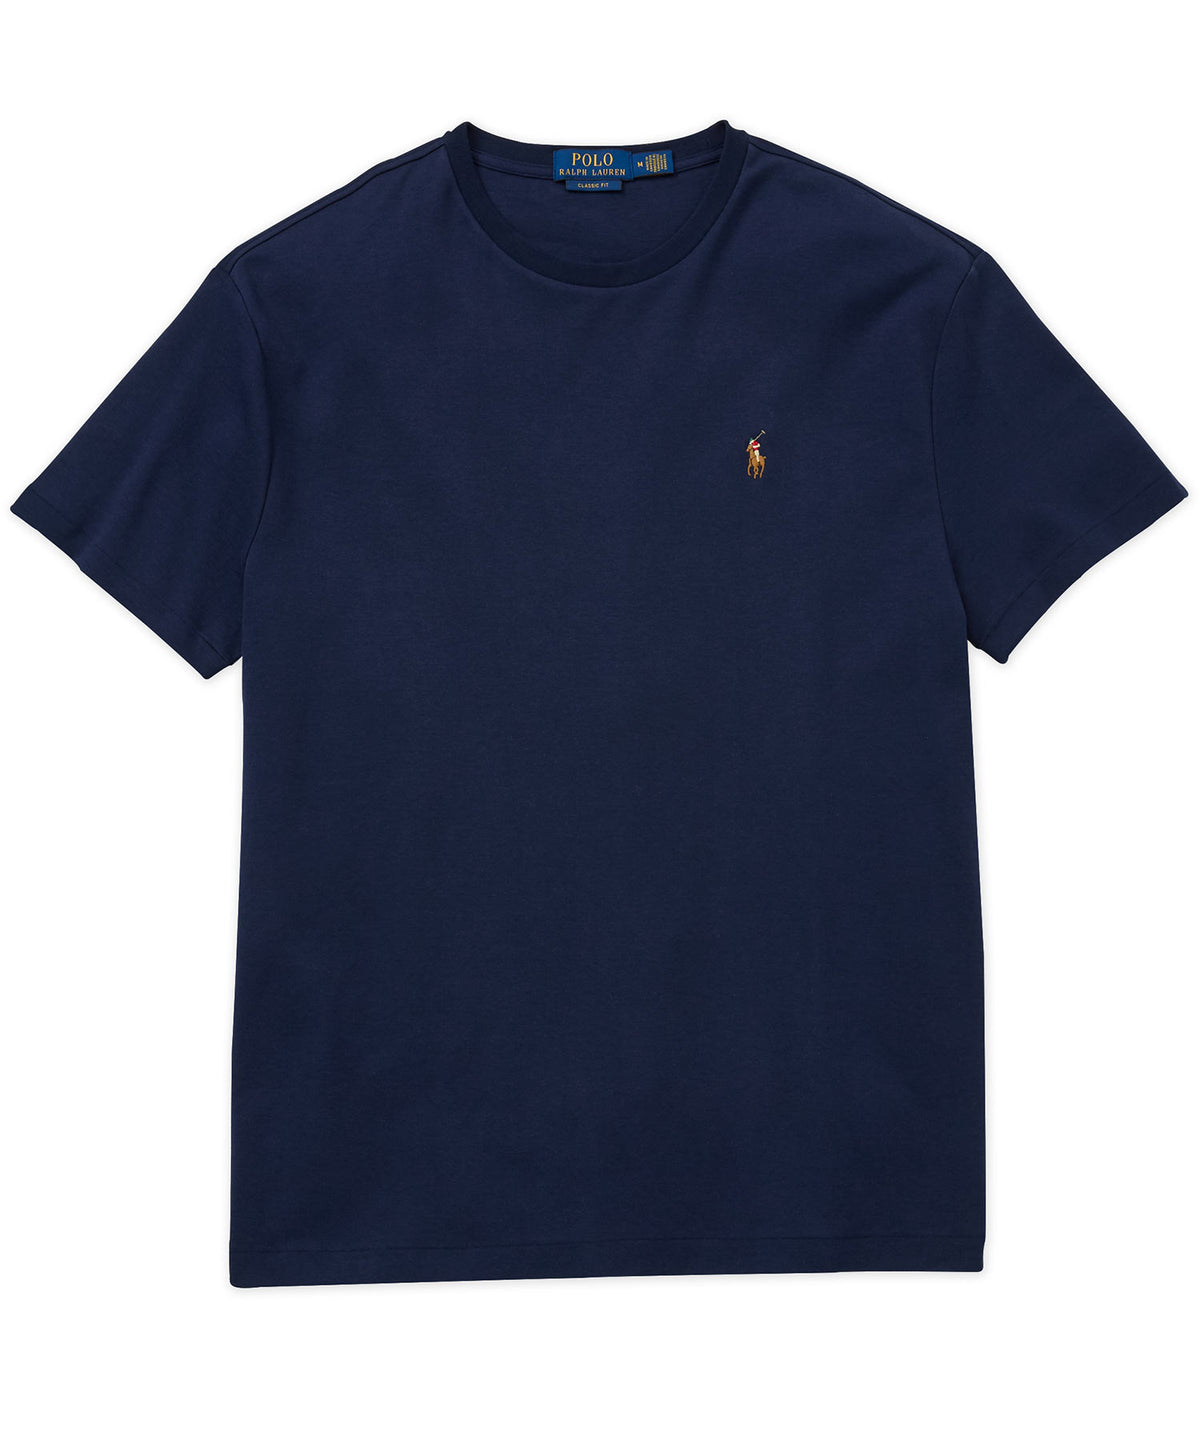 Polo Ralph Lauren Short Sleeve Soft Touch Cotton T-Shirt